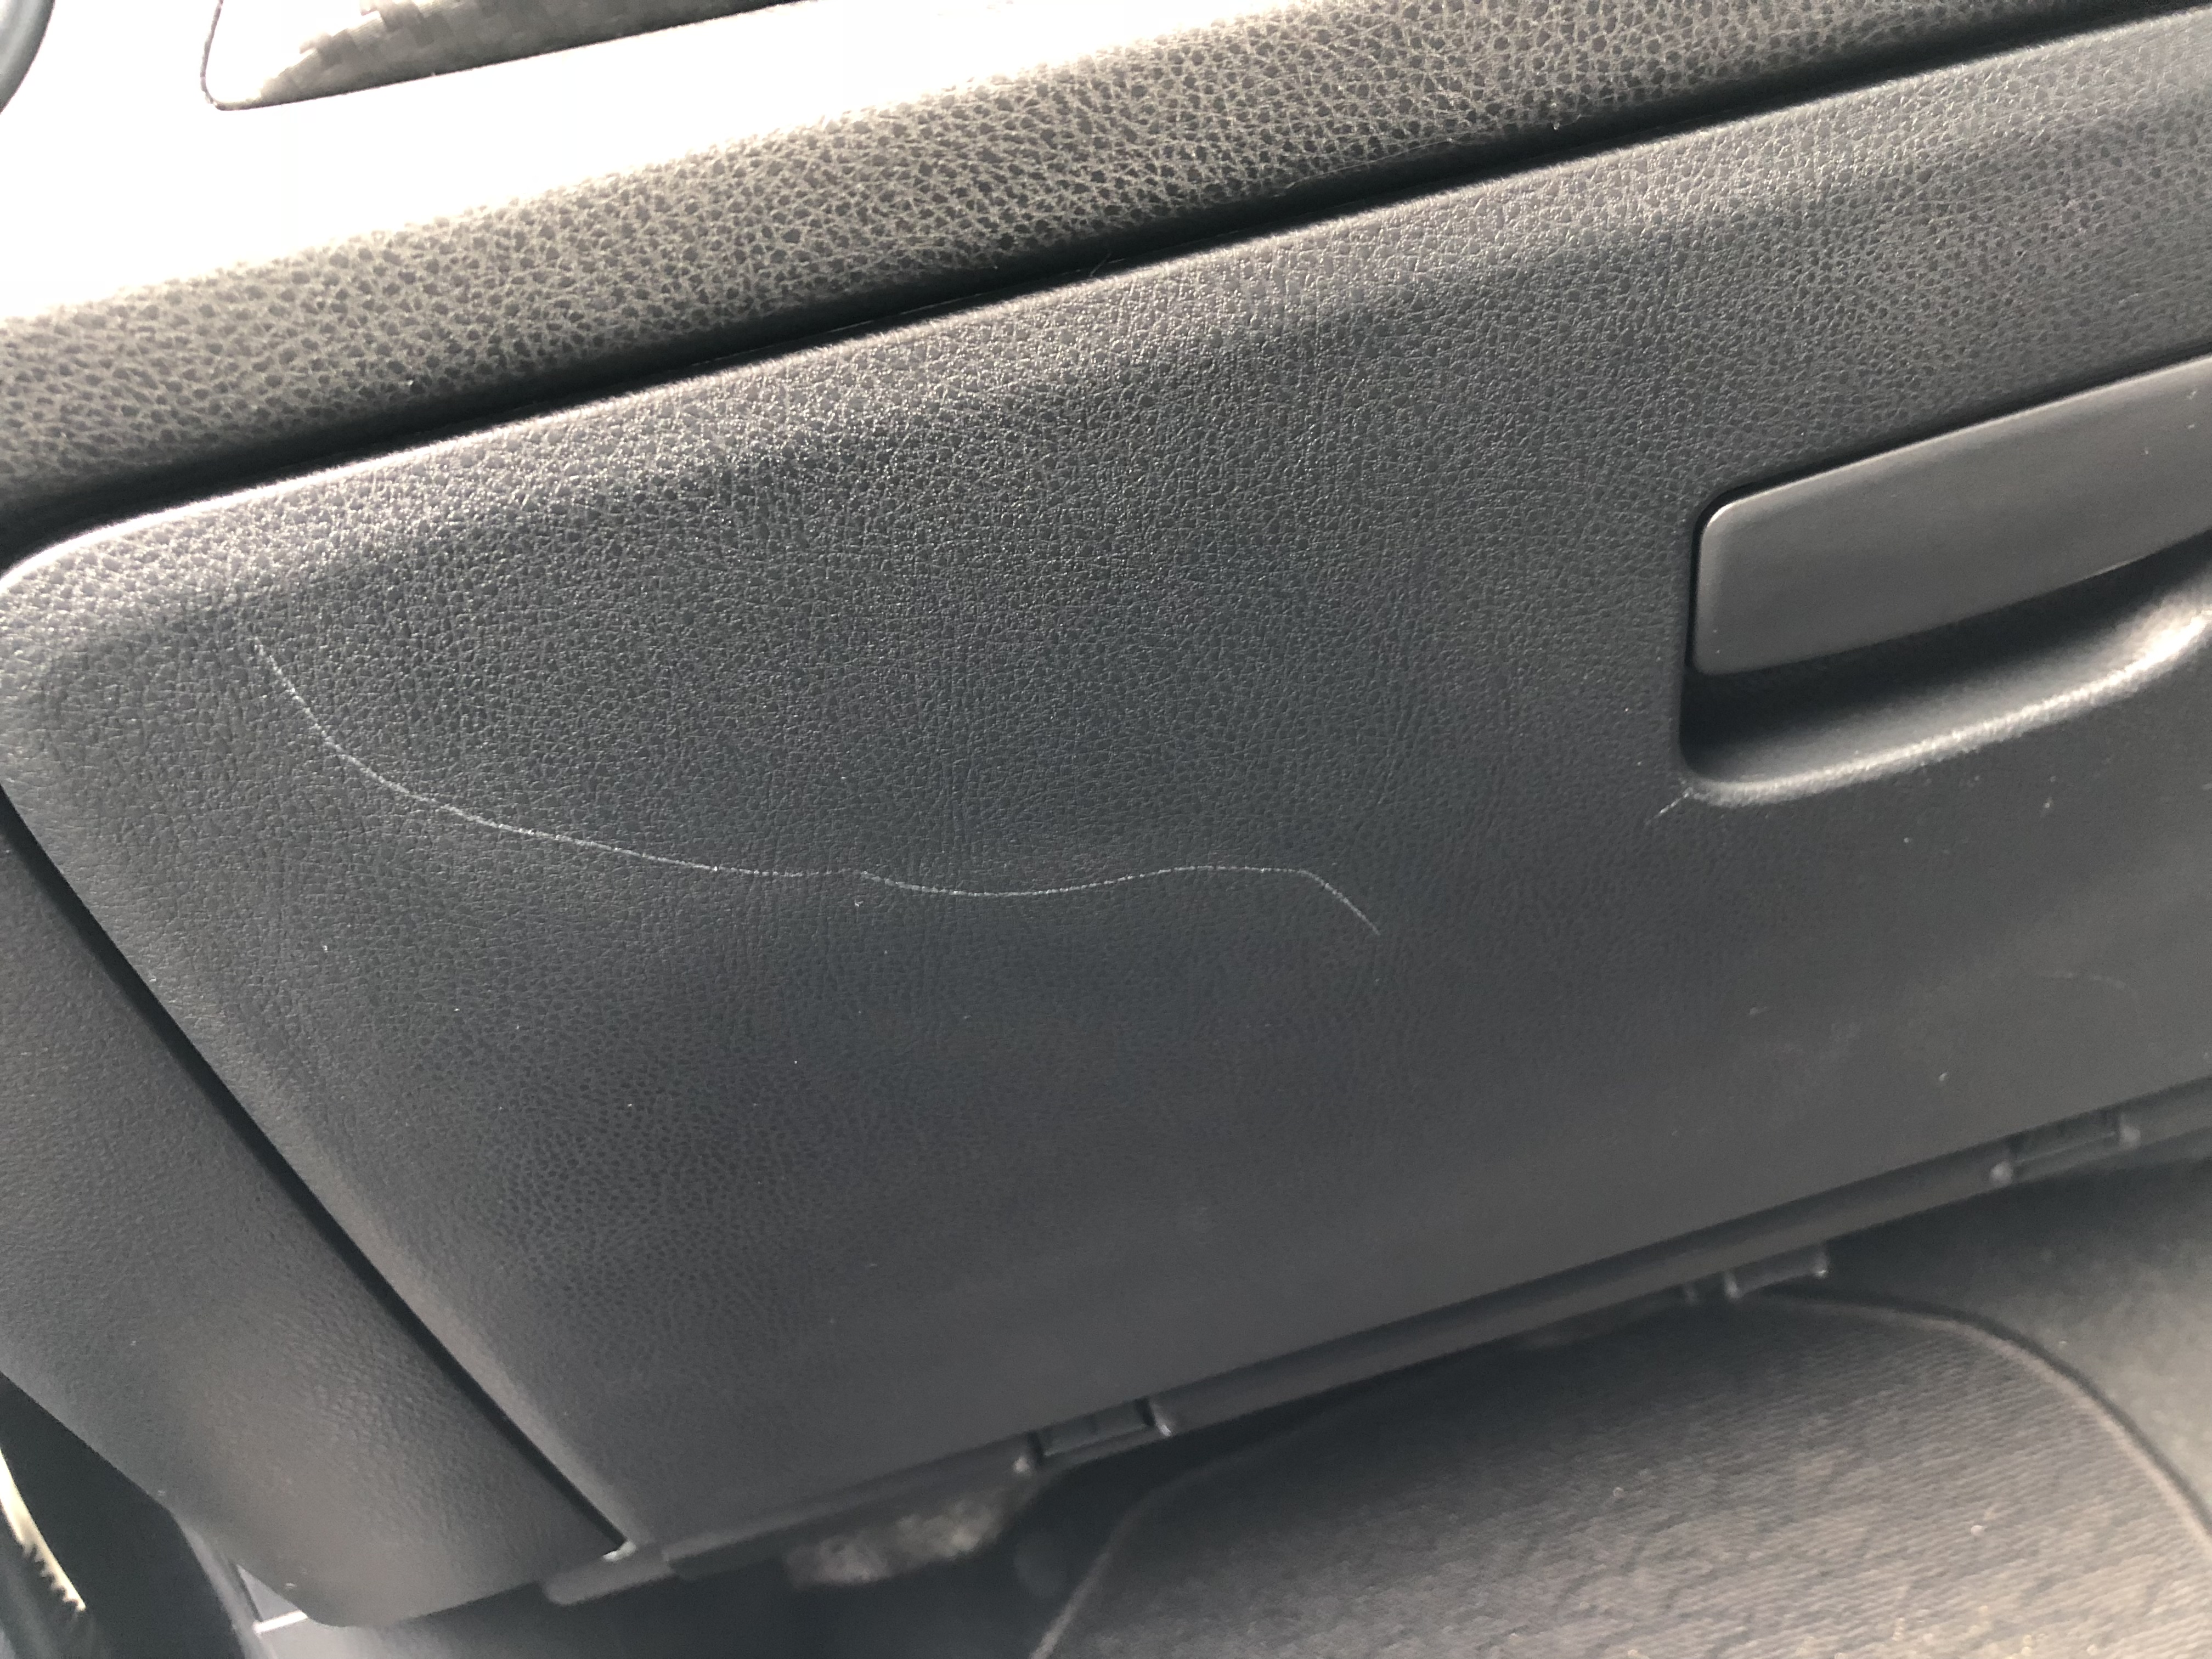 Removing Scuff Marks From Car Interior Chilangomadrid Com